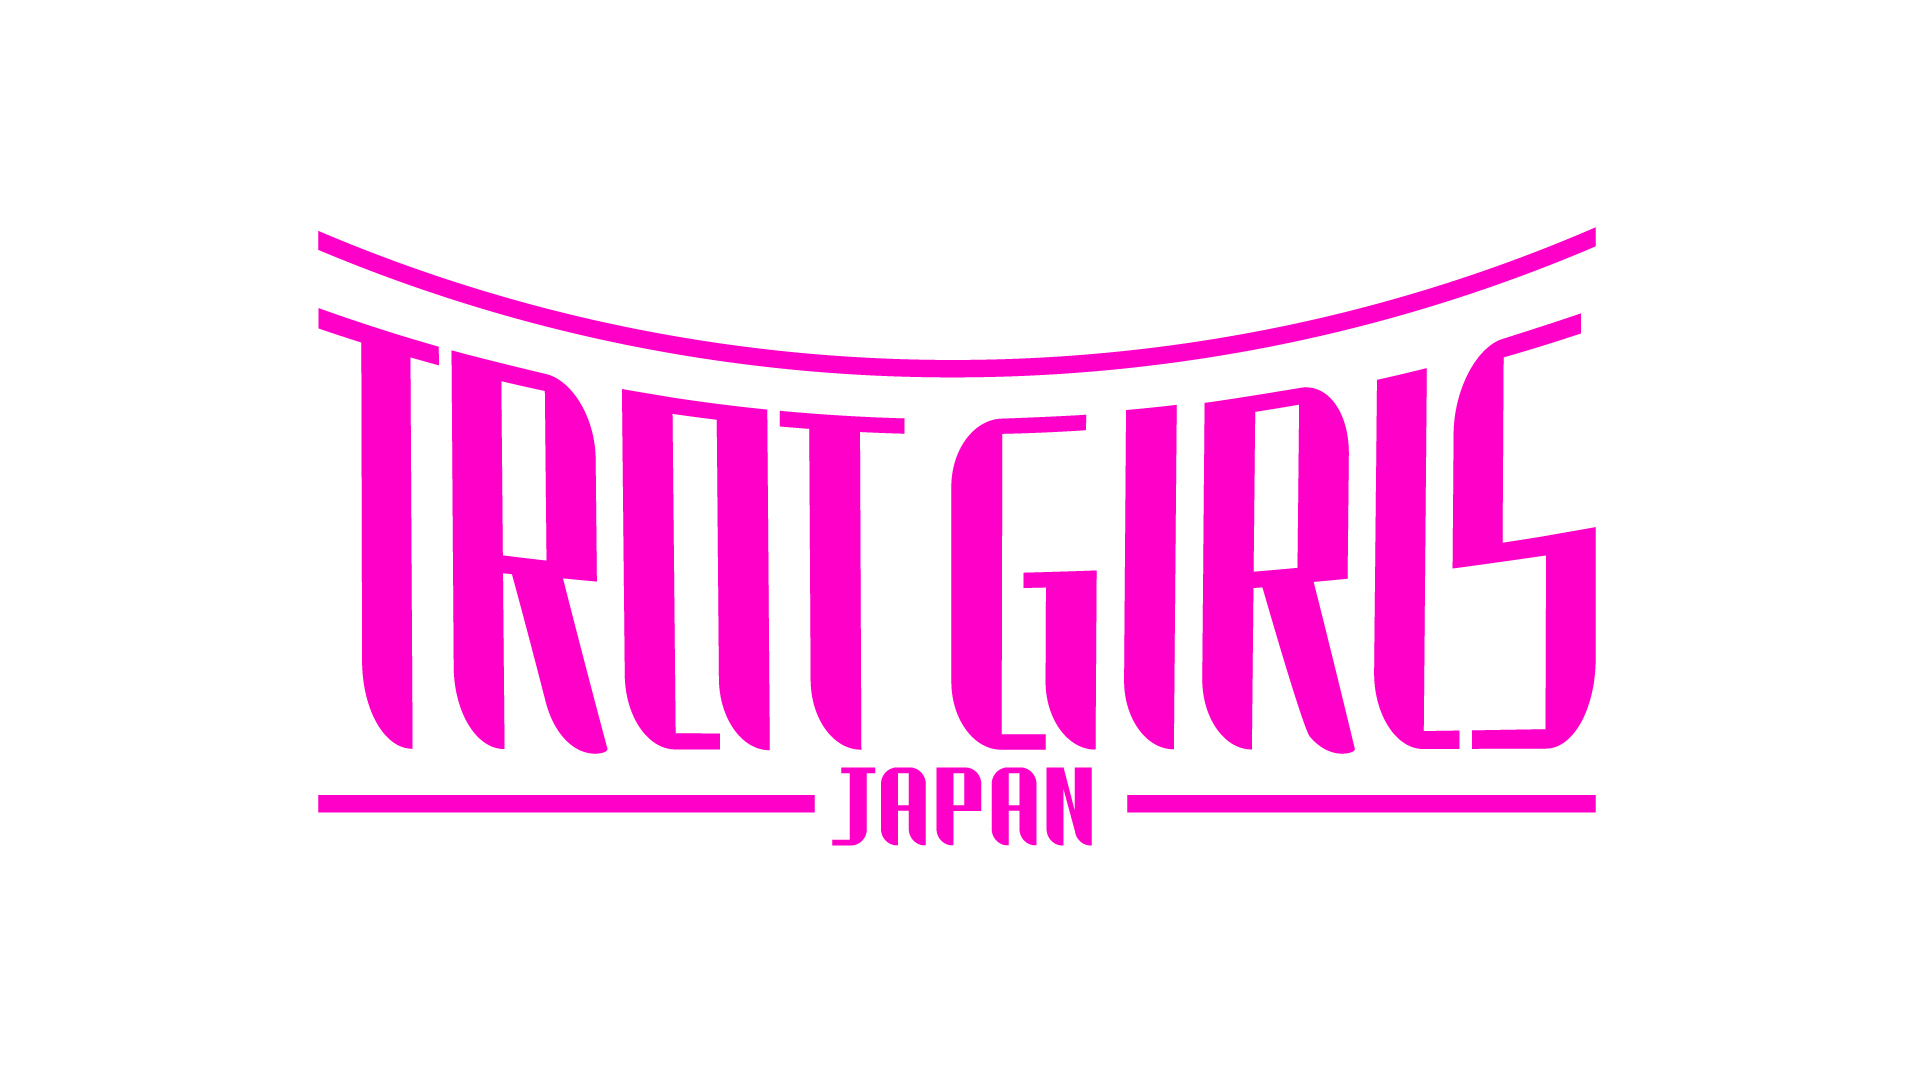 歌姫オーディション・プロジェクト
『トロット・ガールズ・ジャパン』の審査員・第一弾を発表！
～参加者募集期間10月8日24時まで。締め切り迫る～